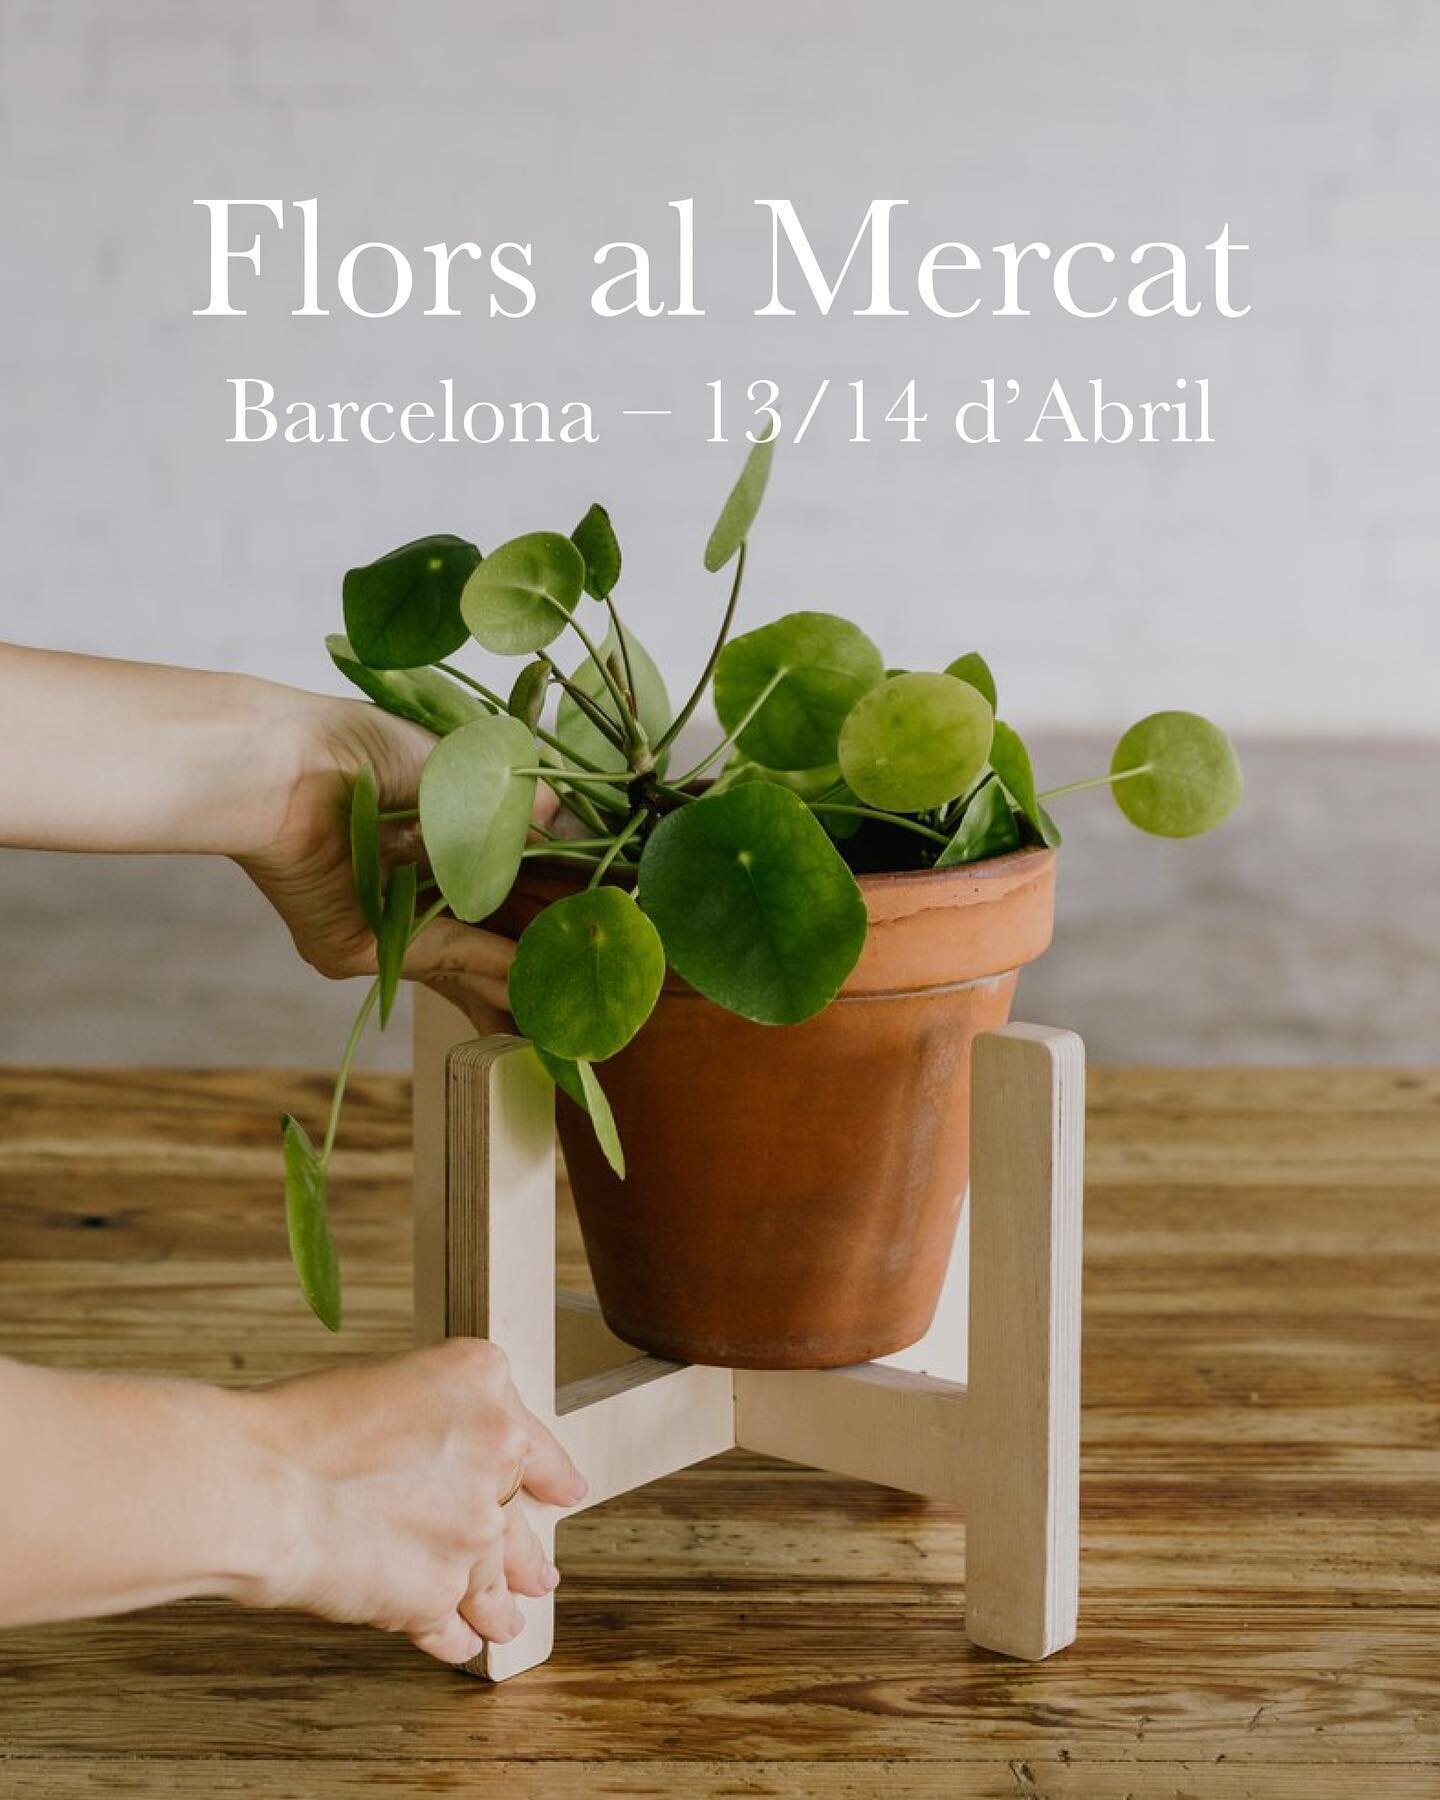 El 13 i 14 d&rsquo;Abril ens trobareu a @florsalmercat, a Pla&ccedil;a Margarida Xirgu, Barcelona. Veniu a saludar-nos 👋